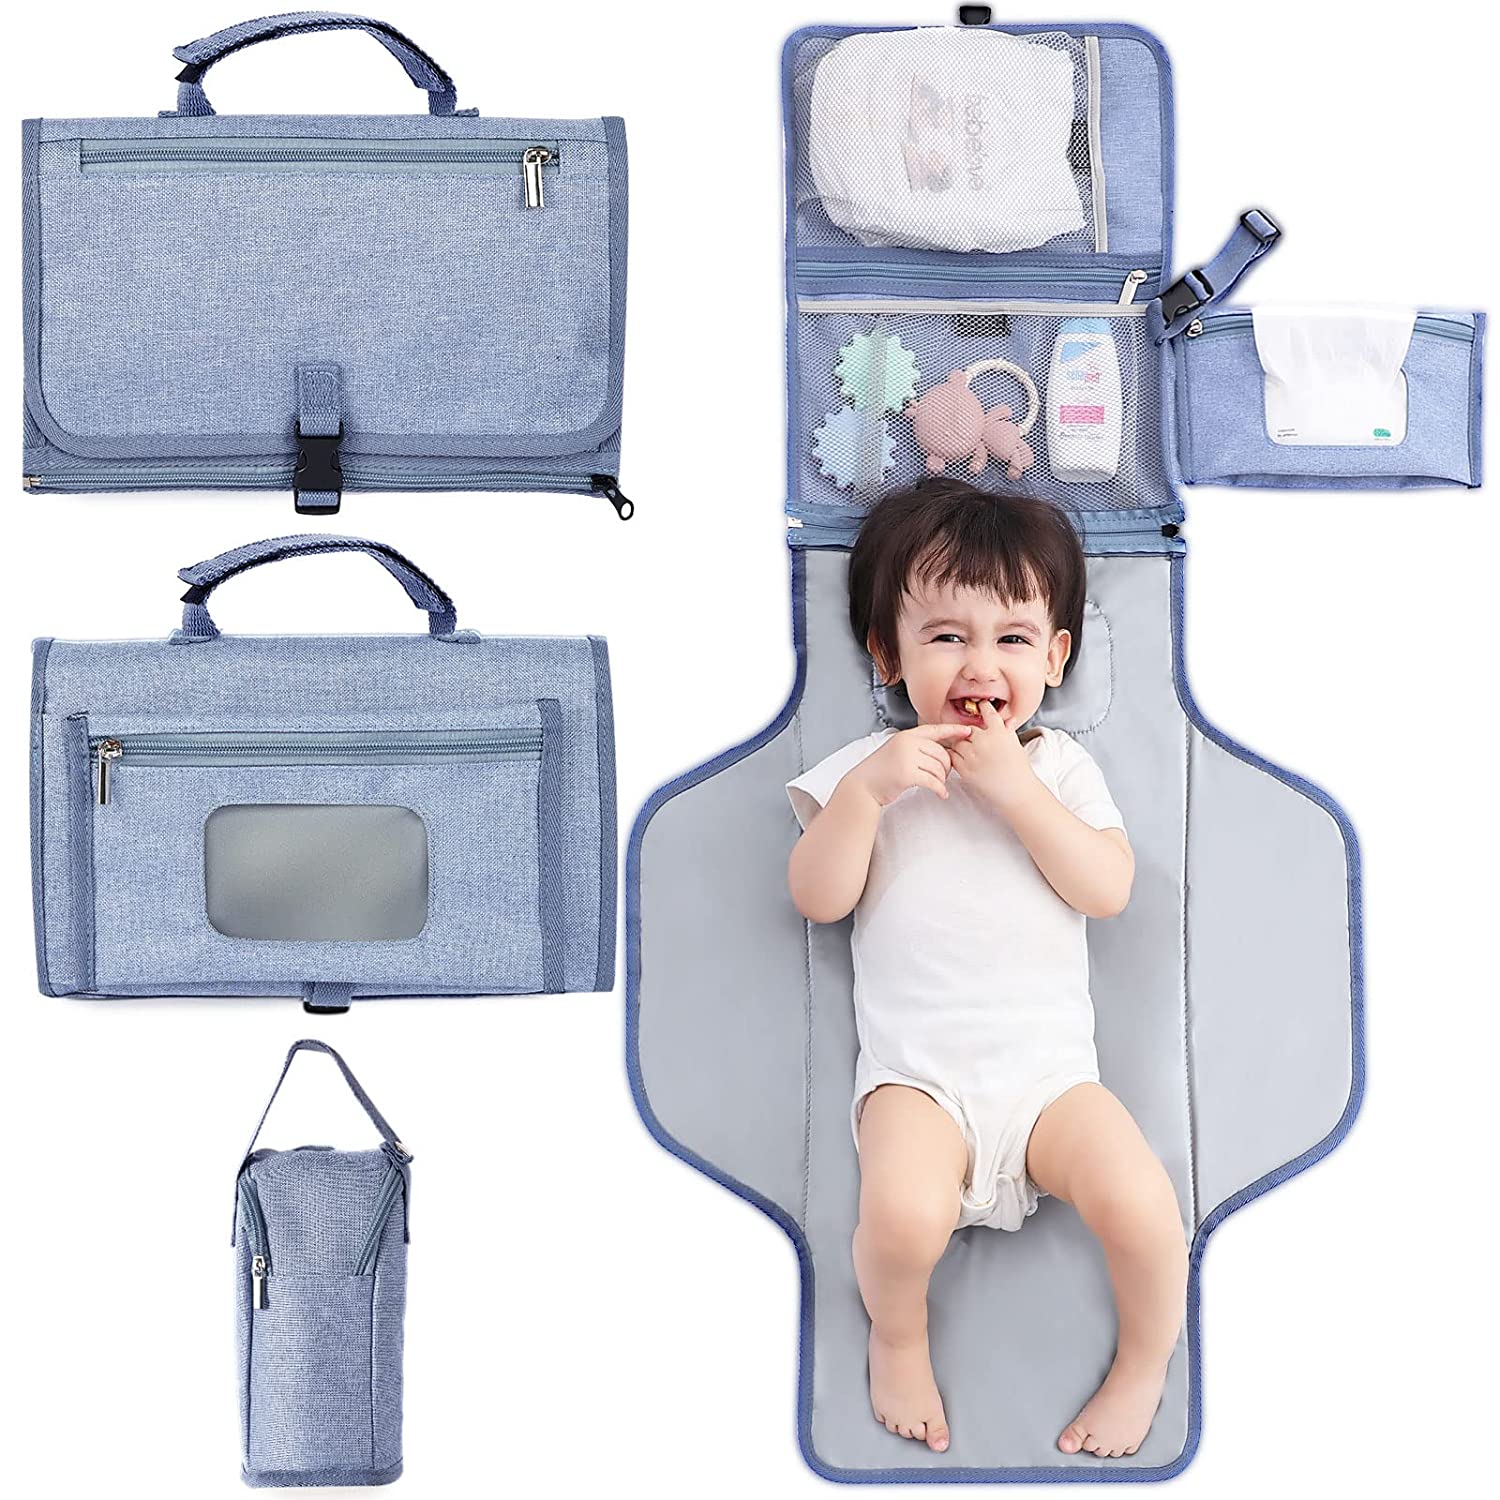 Fasciatoio portatile per pannolini Fasciatoio da viaggio staccabile con borsa termica per biberon Fasciatoio per neonati con reversibile